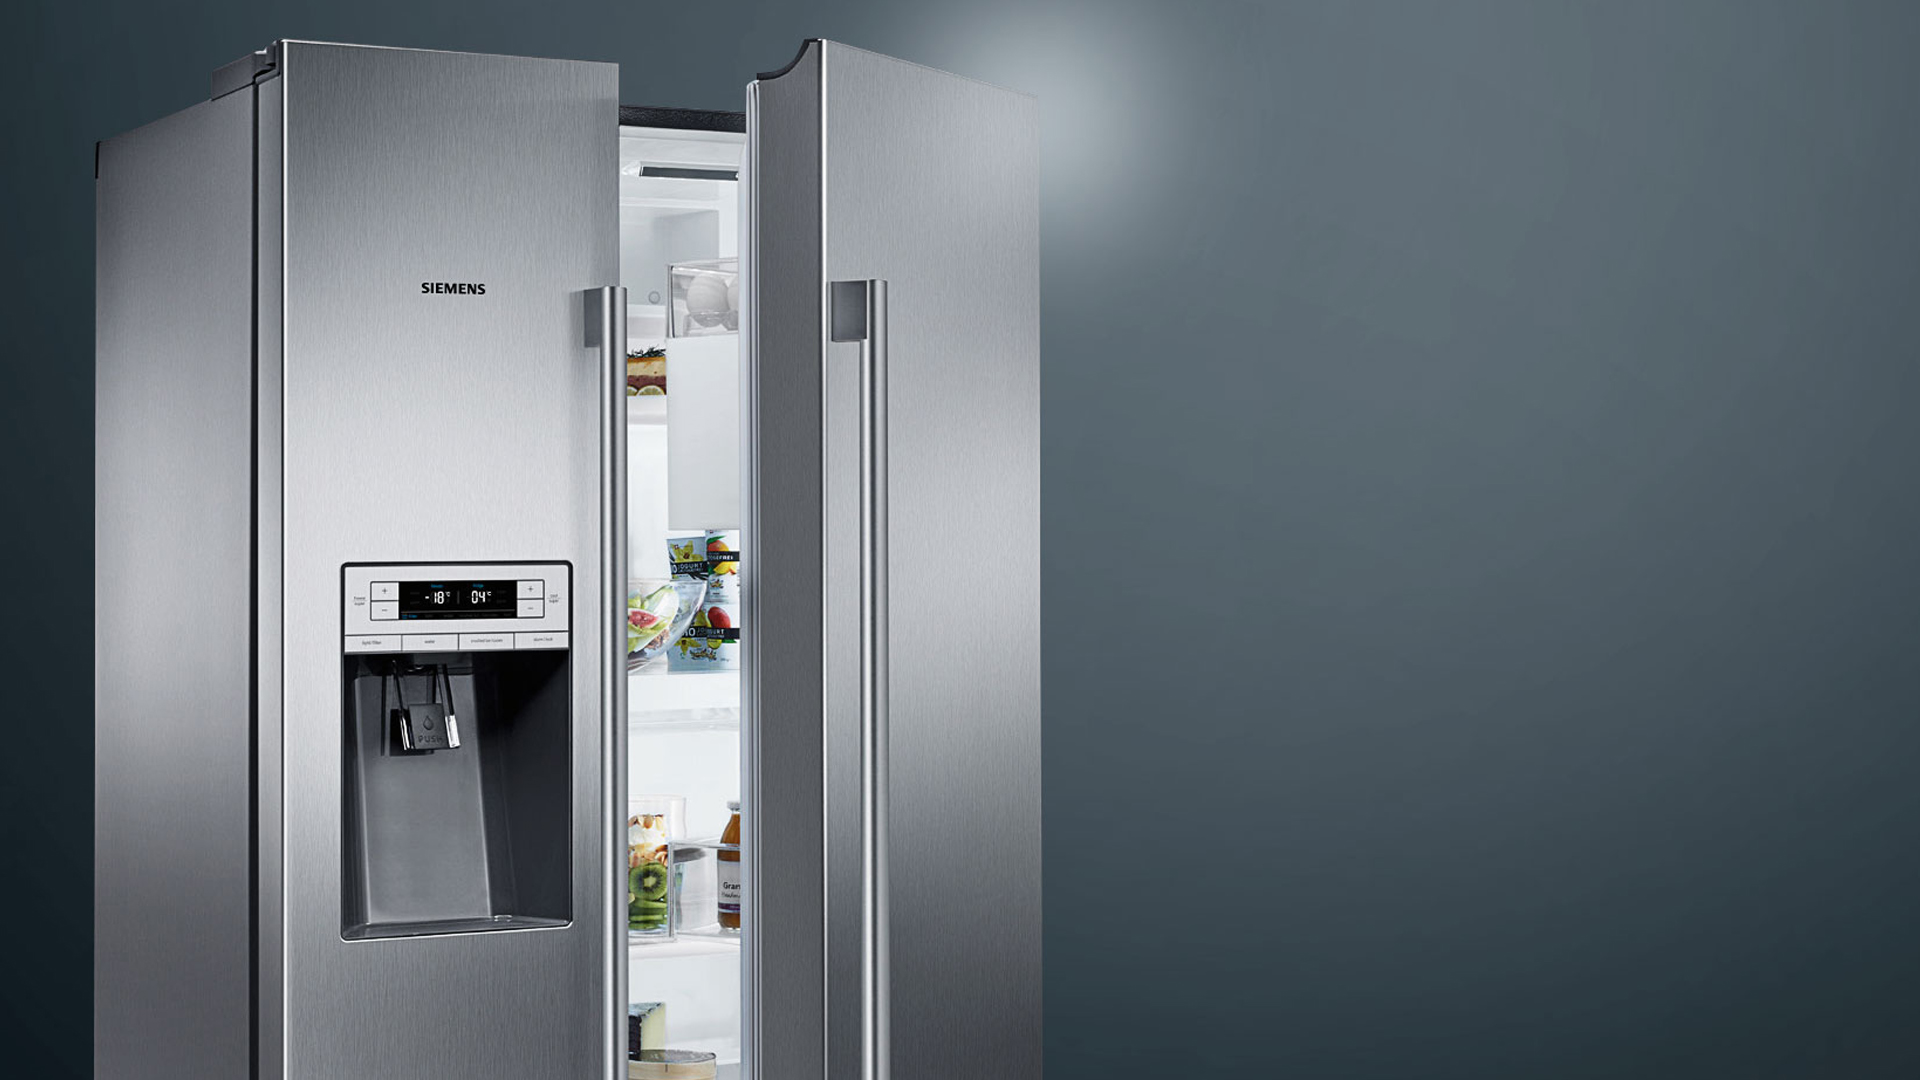 Сервисный центр холодильника ariston. Холодильник Side by Side c ледогенератором. Холодильник Сименс с ледогенератором. Холодильник Либхер двухдверный с ледогенератором. Встраиваемый холодильник с ледогенератором Liebherr.